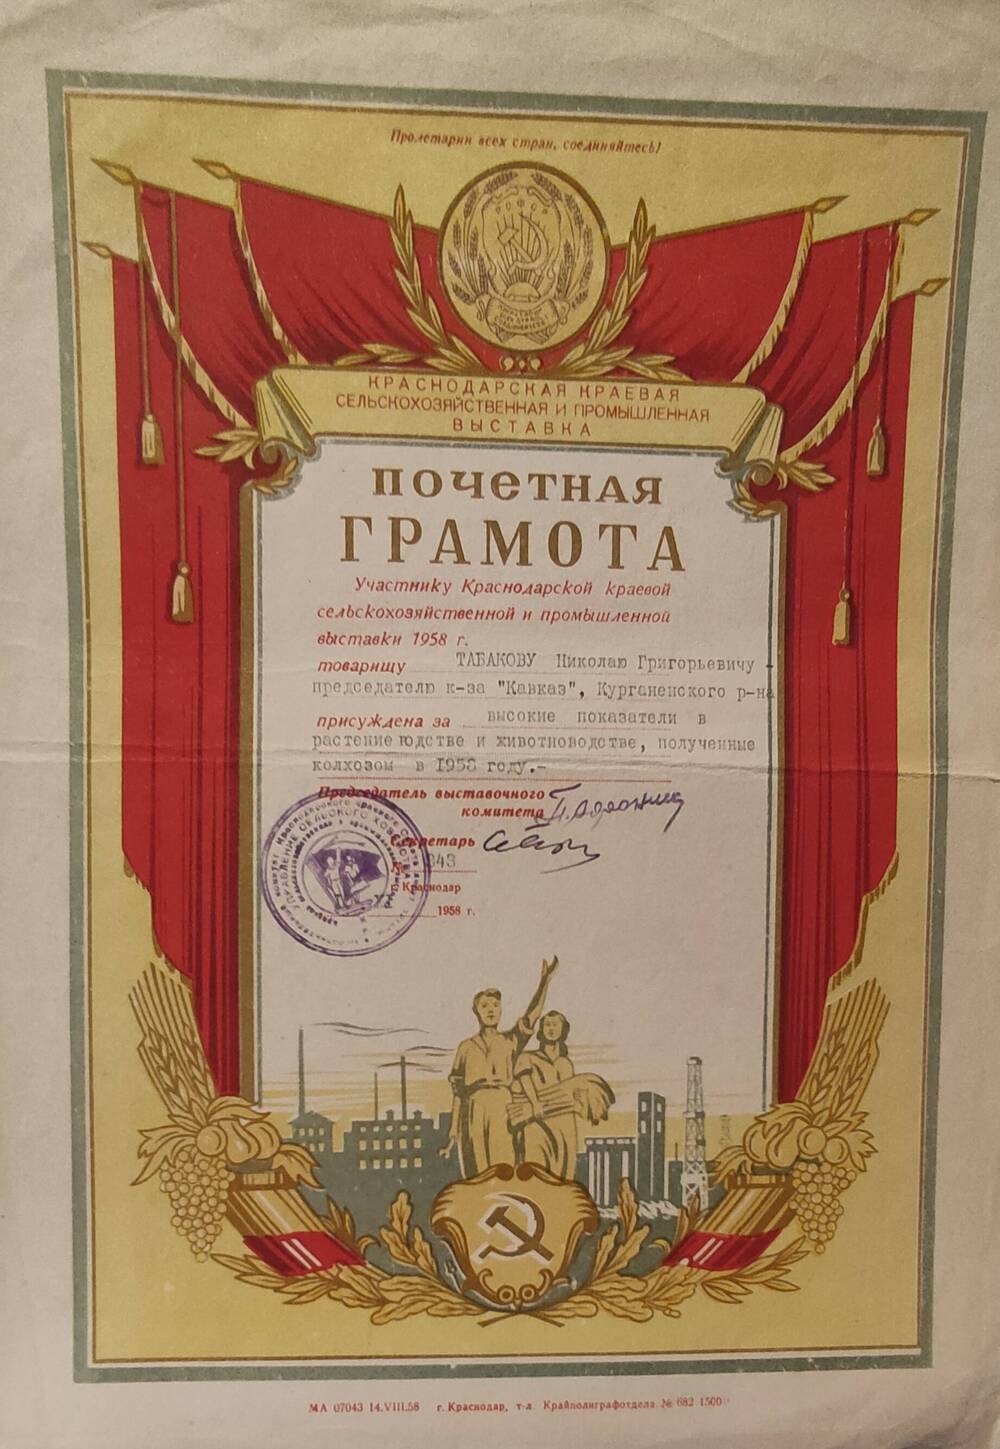 Грамота почетная  Табакову Н.Г.за высокие показатели в растениеводстве и животноводстве, полученные в 1958 году